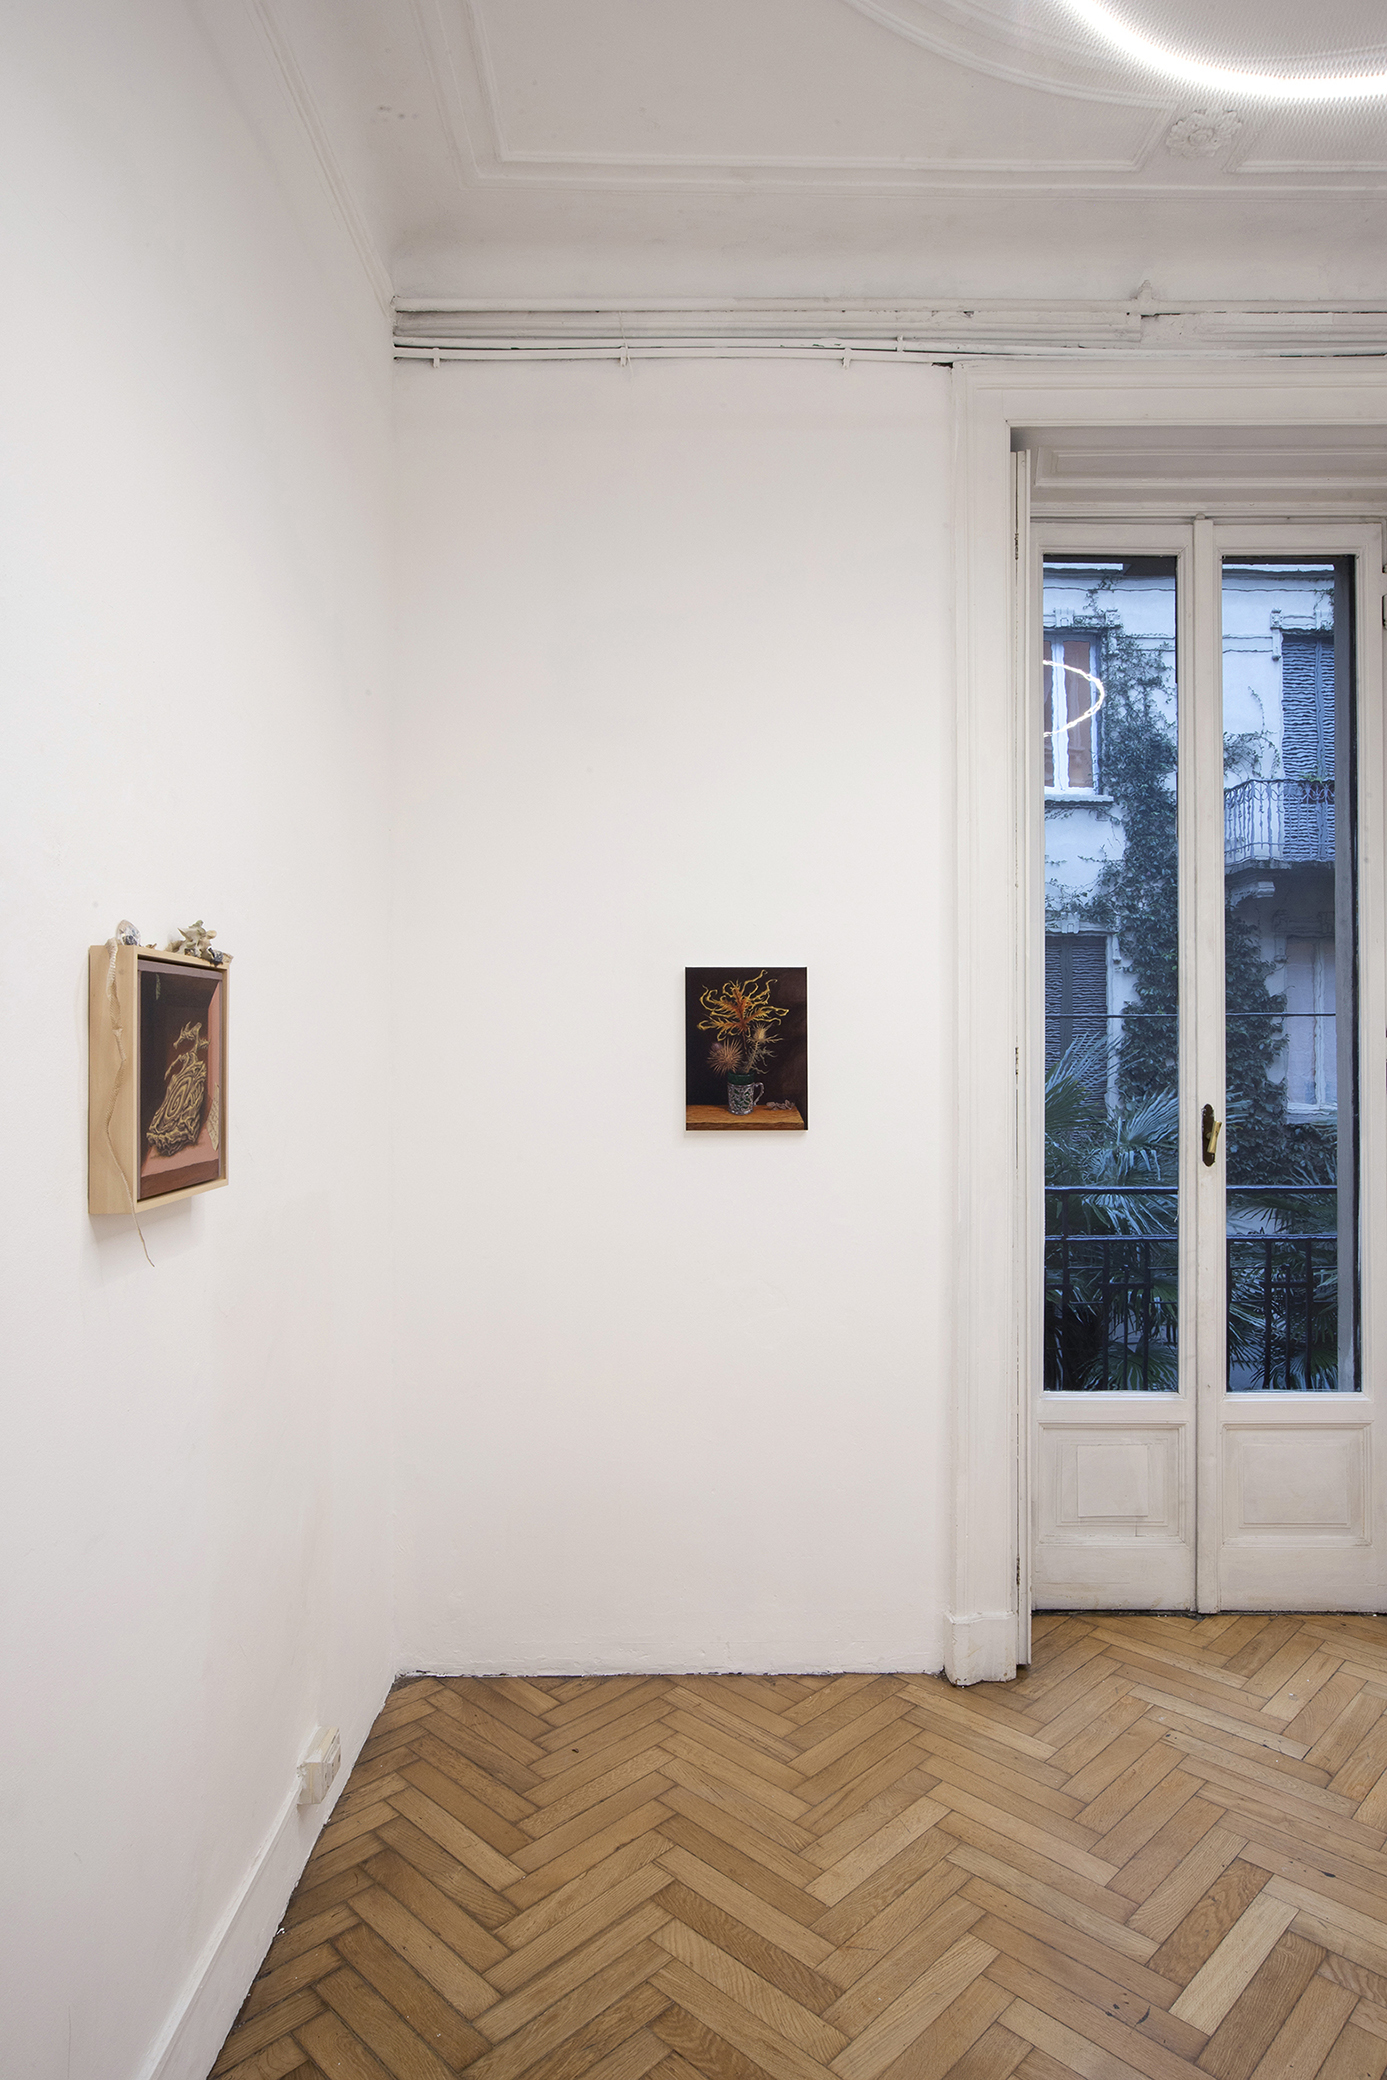 Installation view: Giuseppe Salis, Vanitas con crisalide, acrylic on canvas, 30x30 cm, 2023 (left) + Giuseppe Salis, Natura morta con spine, acrylic on canvas, 40 x 30 cm, 2023 